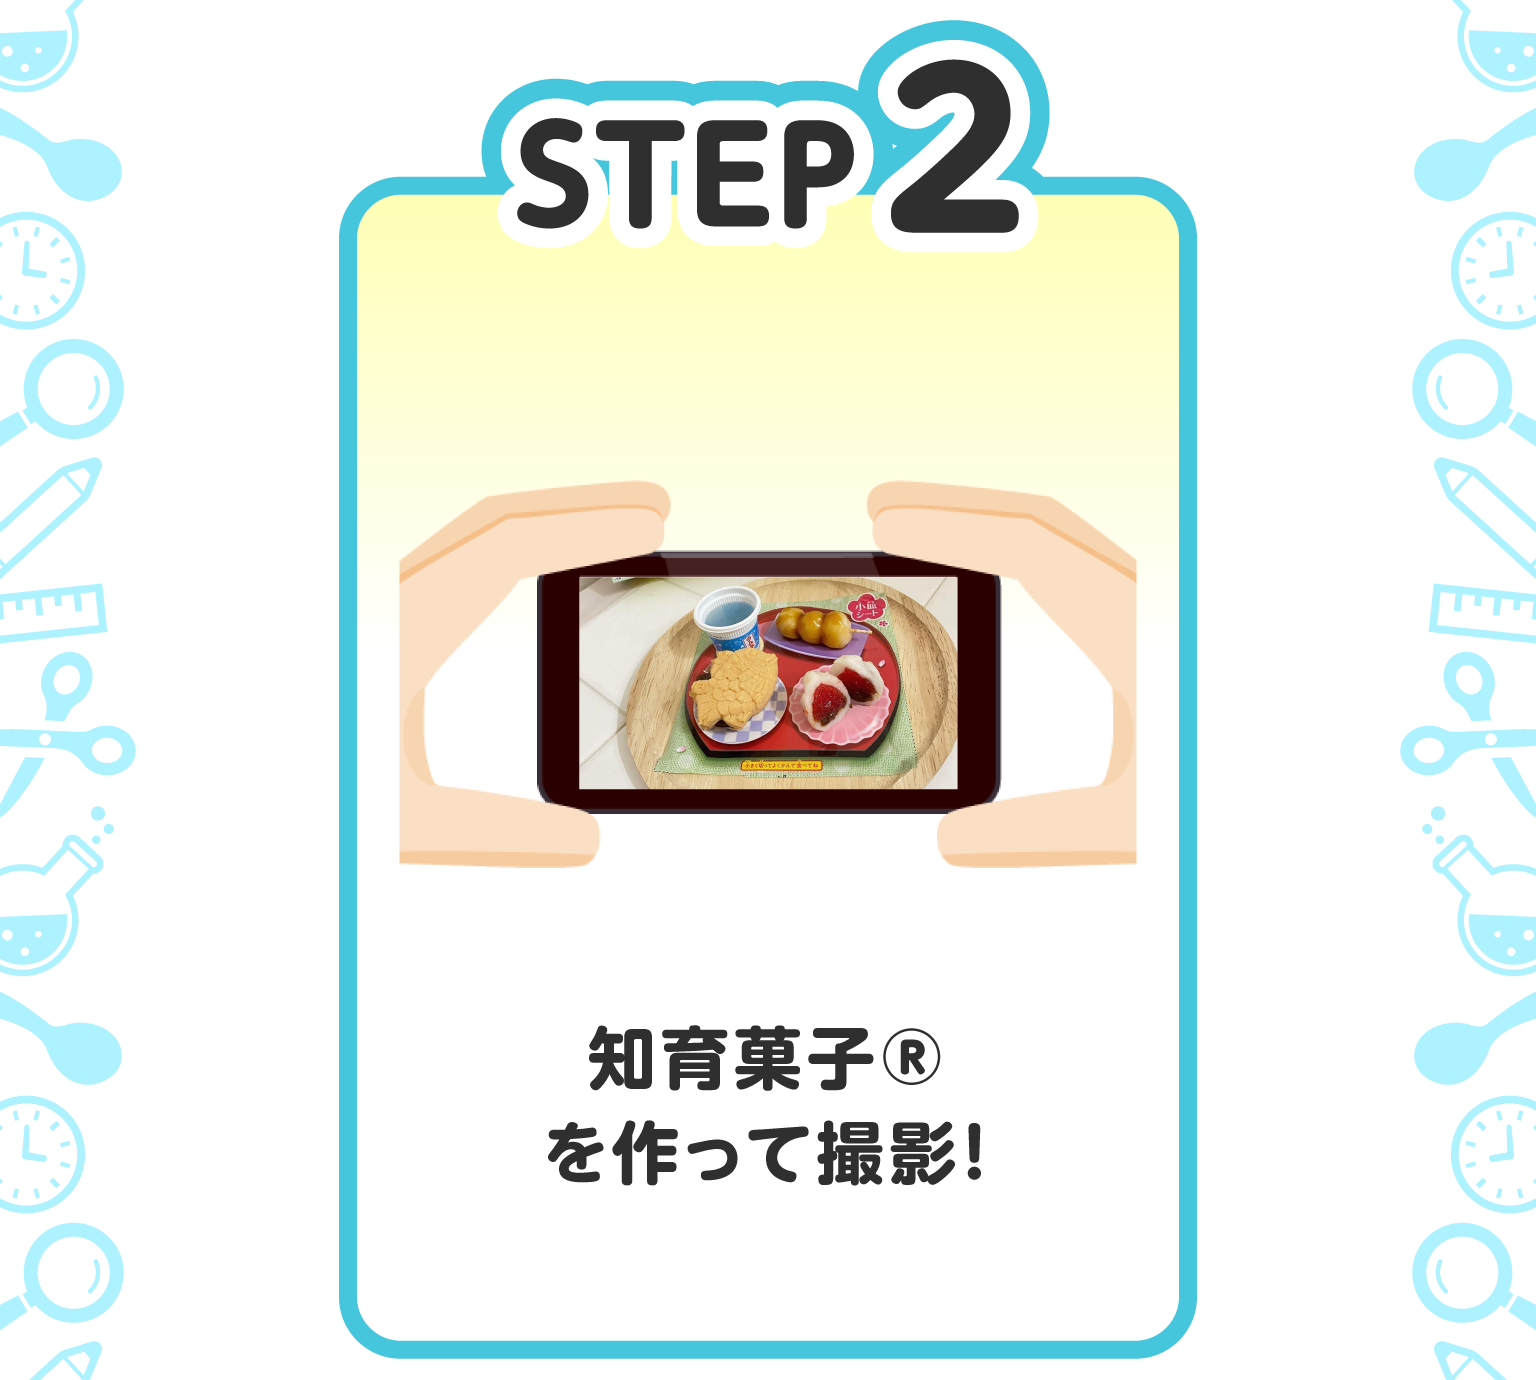 STEP2 知育菓子(R)を作って撮影！